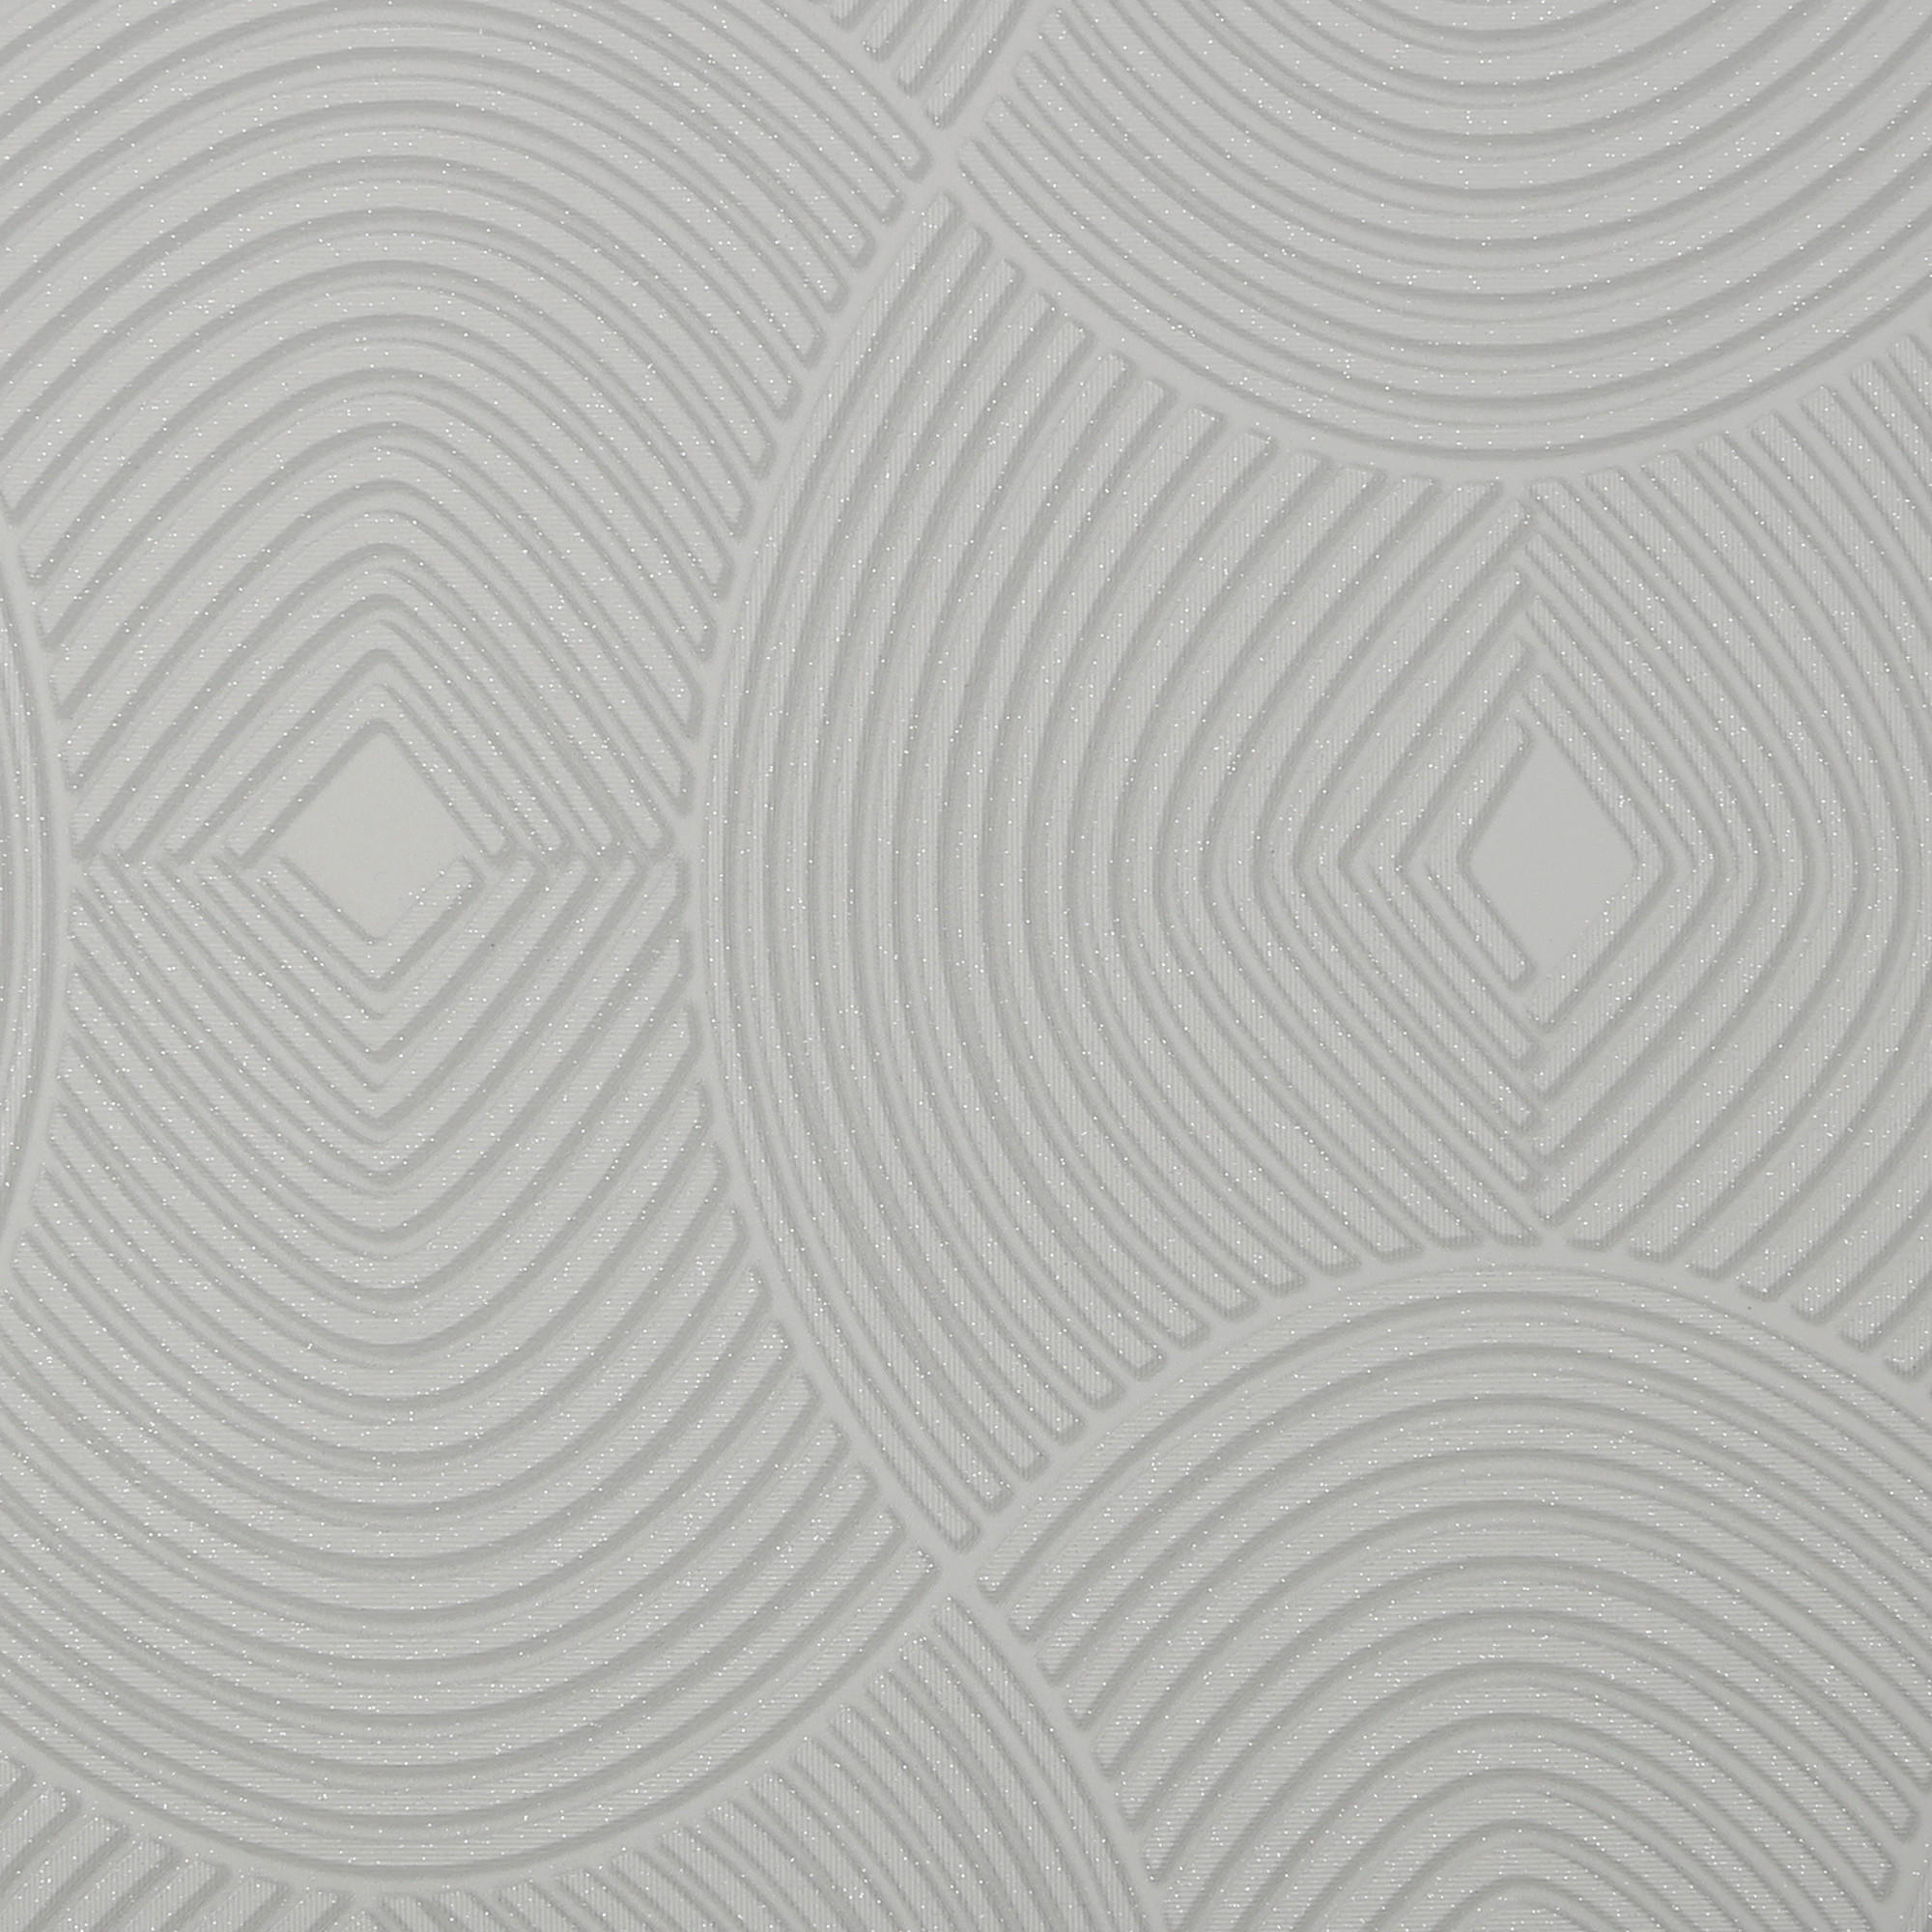 VLIESTAPETE  - Grau, Basics, Papier/Kunststoff (52/1000cm)